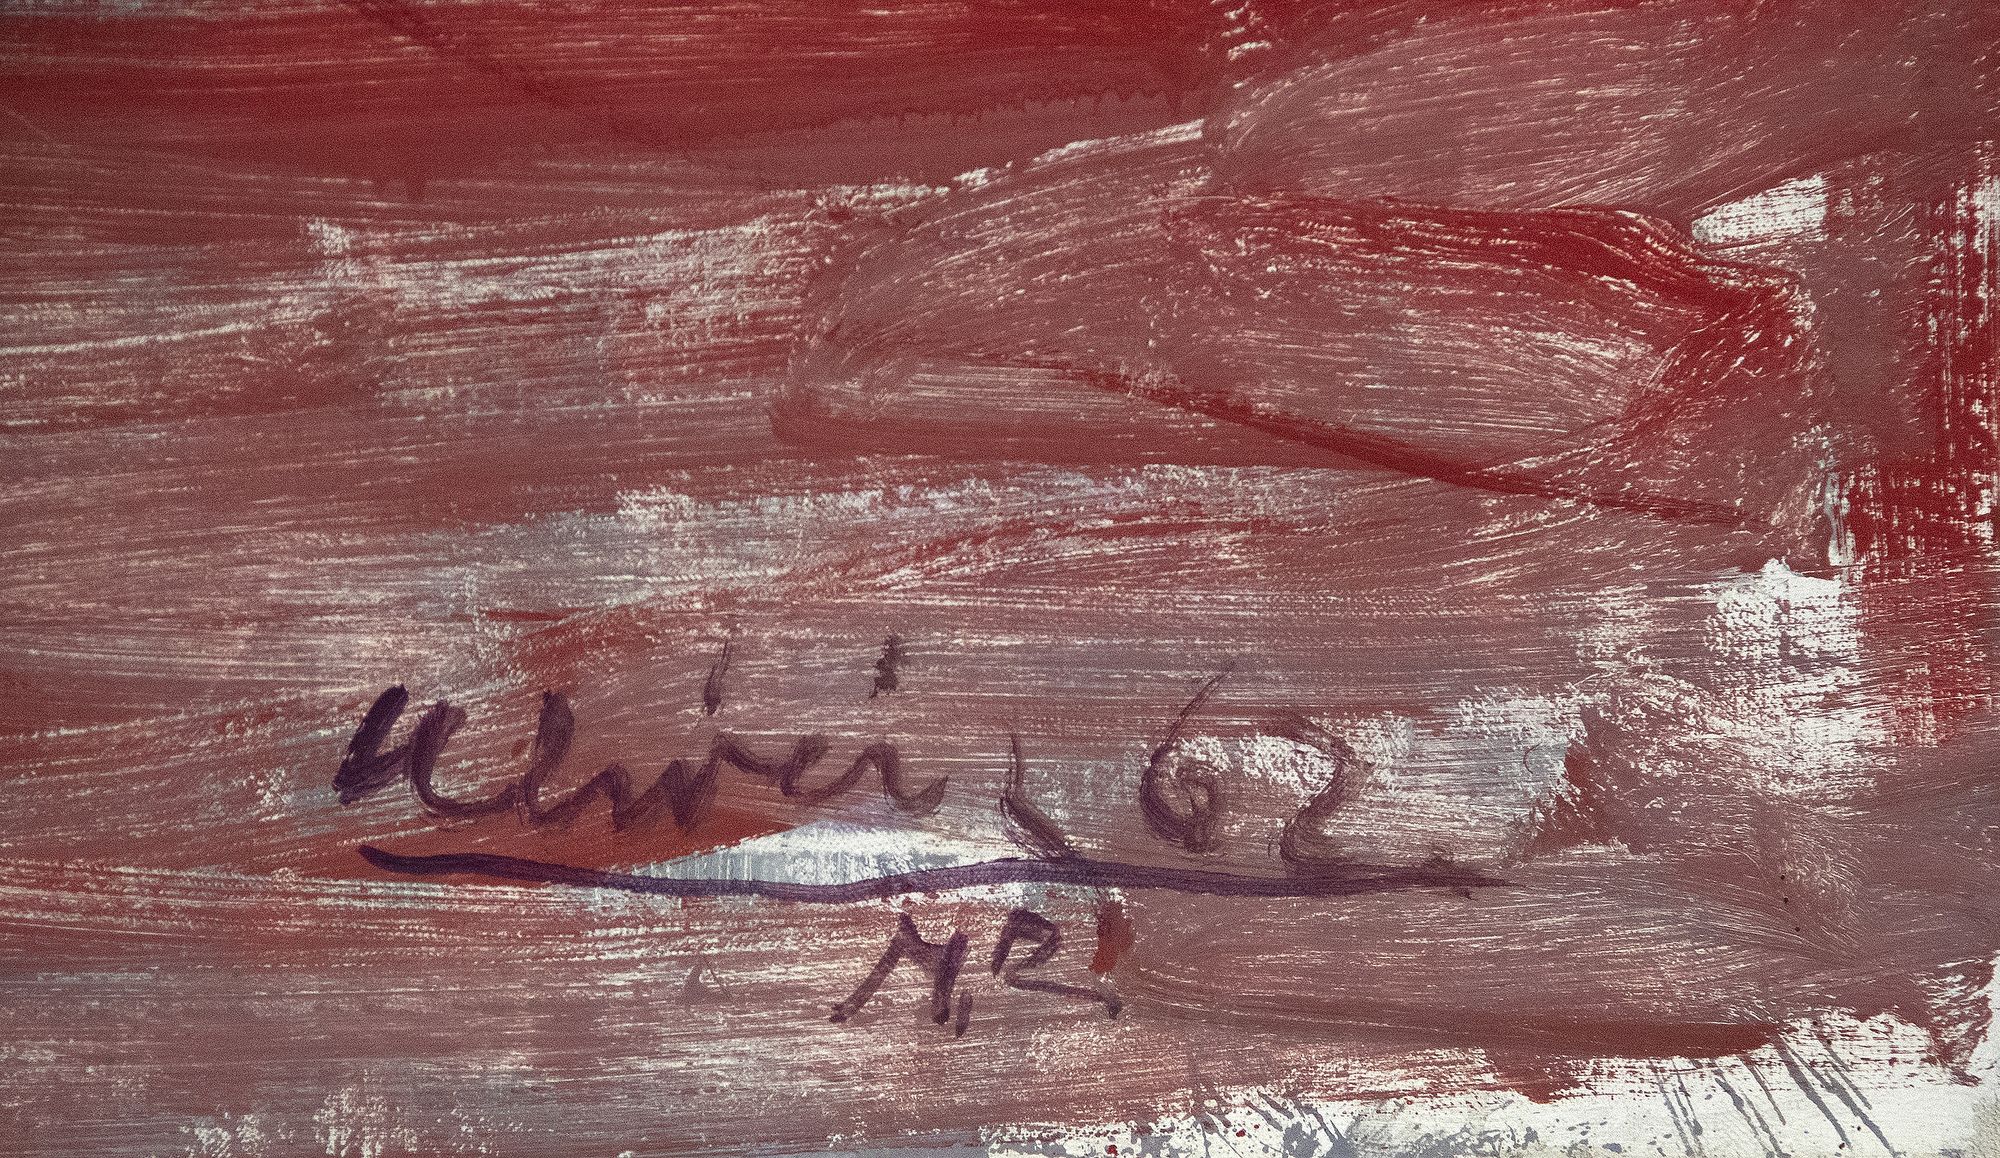 נתן אוליברה מזוהה לעתים קרובות עם הציירים הפיגורטיביים של אזור המפרץ של קליפורניה, אך במציאות, עבודתו חושפת את התעניינותו בוילם דה קונינג, אלברטו ג&#039;קומטי ופרנסיס בייקון. השפעות אלה הן מאפיינים בולטים של דריכה בעירום מהשטיח. הוא צויר כשאוליברה היה בשנות ה-30 המוקדמות לחייו, והוא בדיוק מסוג הציורים שביססו את המוניטין המוקדם שלו כרודף תיאורים של דמויות בודדות שצוירו בסגנון אלתור. עבודתה המאוחרת של אוליביירה משקפת את הערתו רבת ההשפעה של דה קונינג בנוגע לאתגר שבציור זיכרונות חזותיים וביצירת פיגורציות בעלות נוכחות רופפת, אך קו האופק החזק המקרקע נוף זה מעניק לדמות נוכחות גשמית יותר מהרגיל.